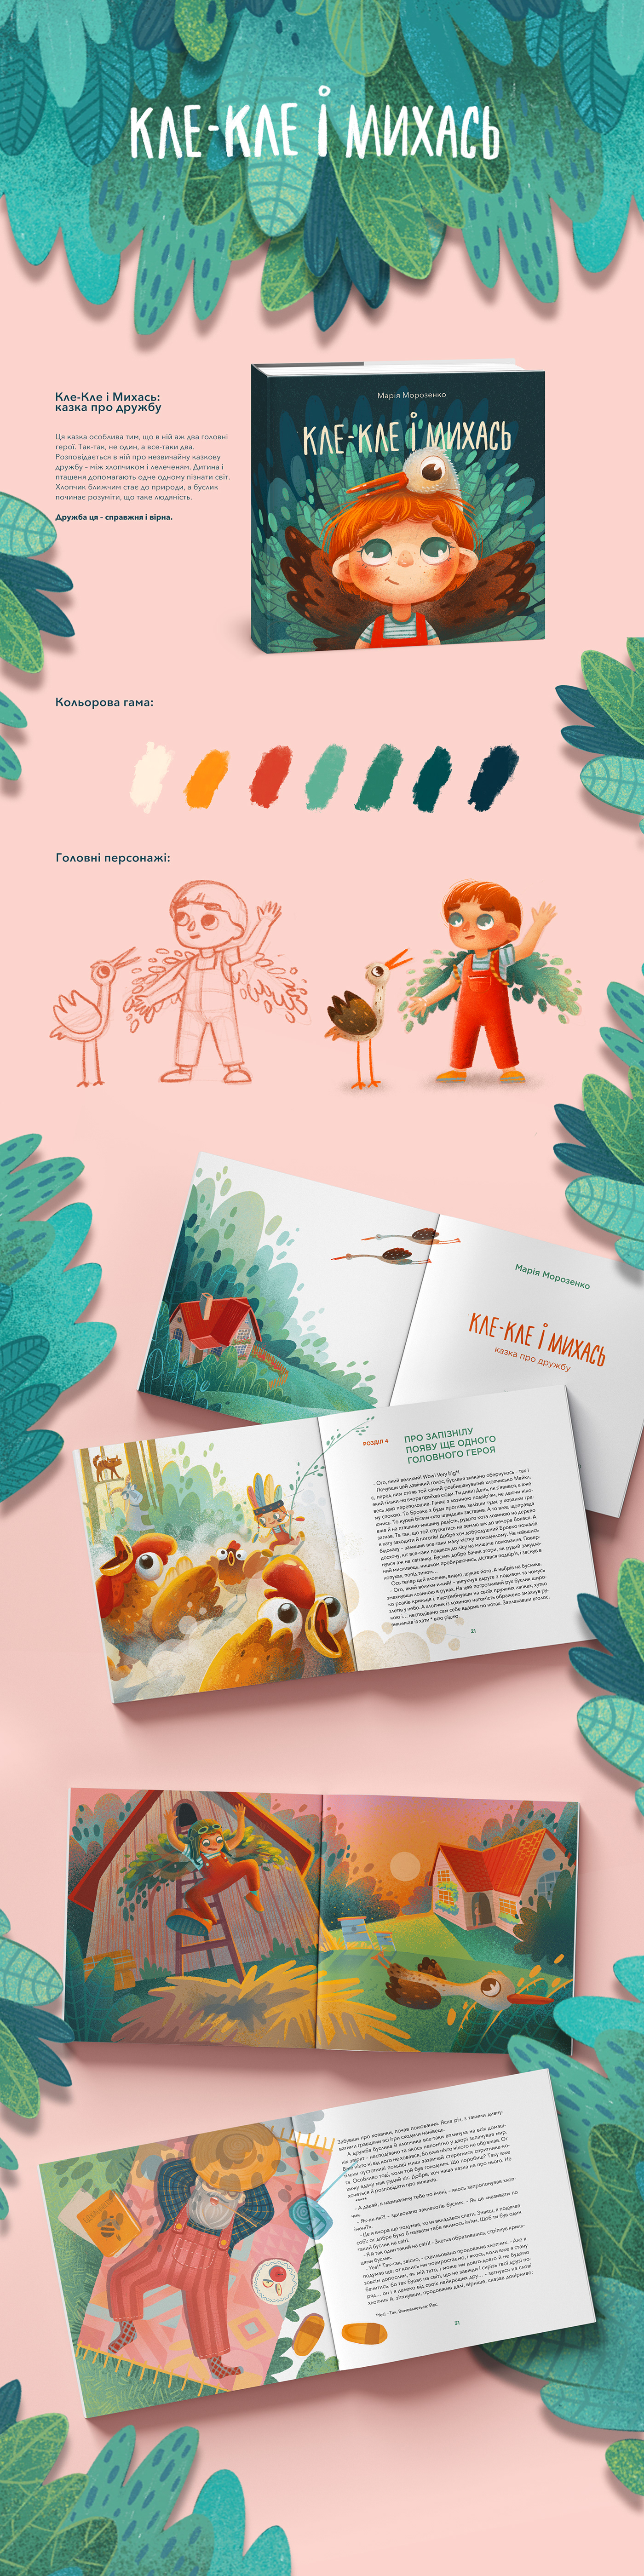 characters children's book children's book cover children's illustration digital illustration